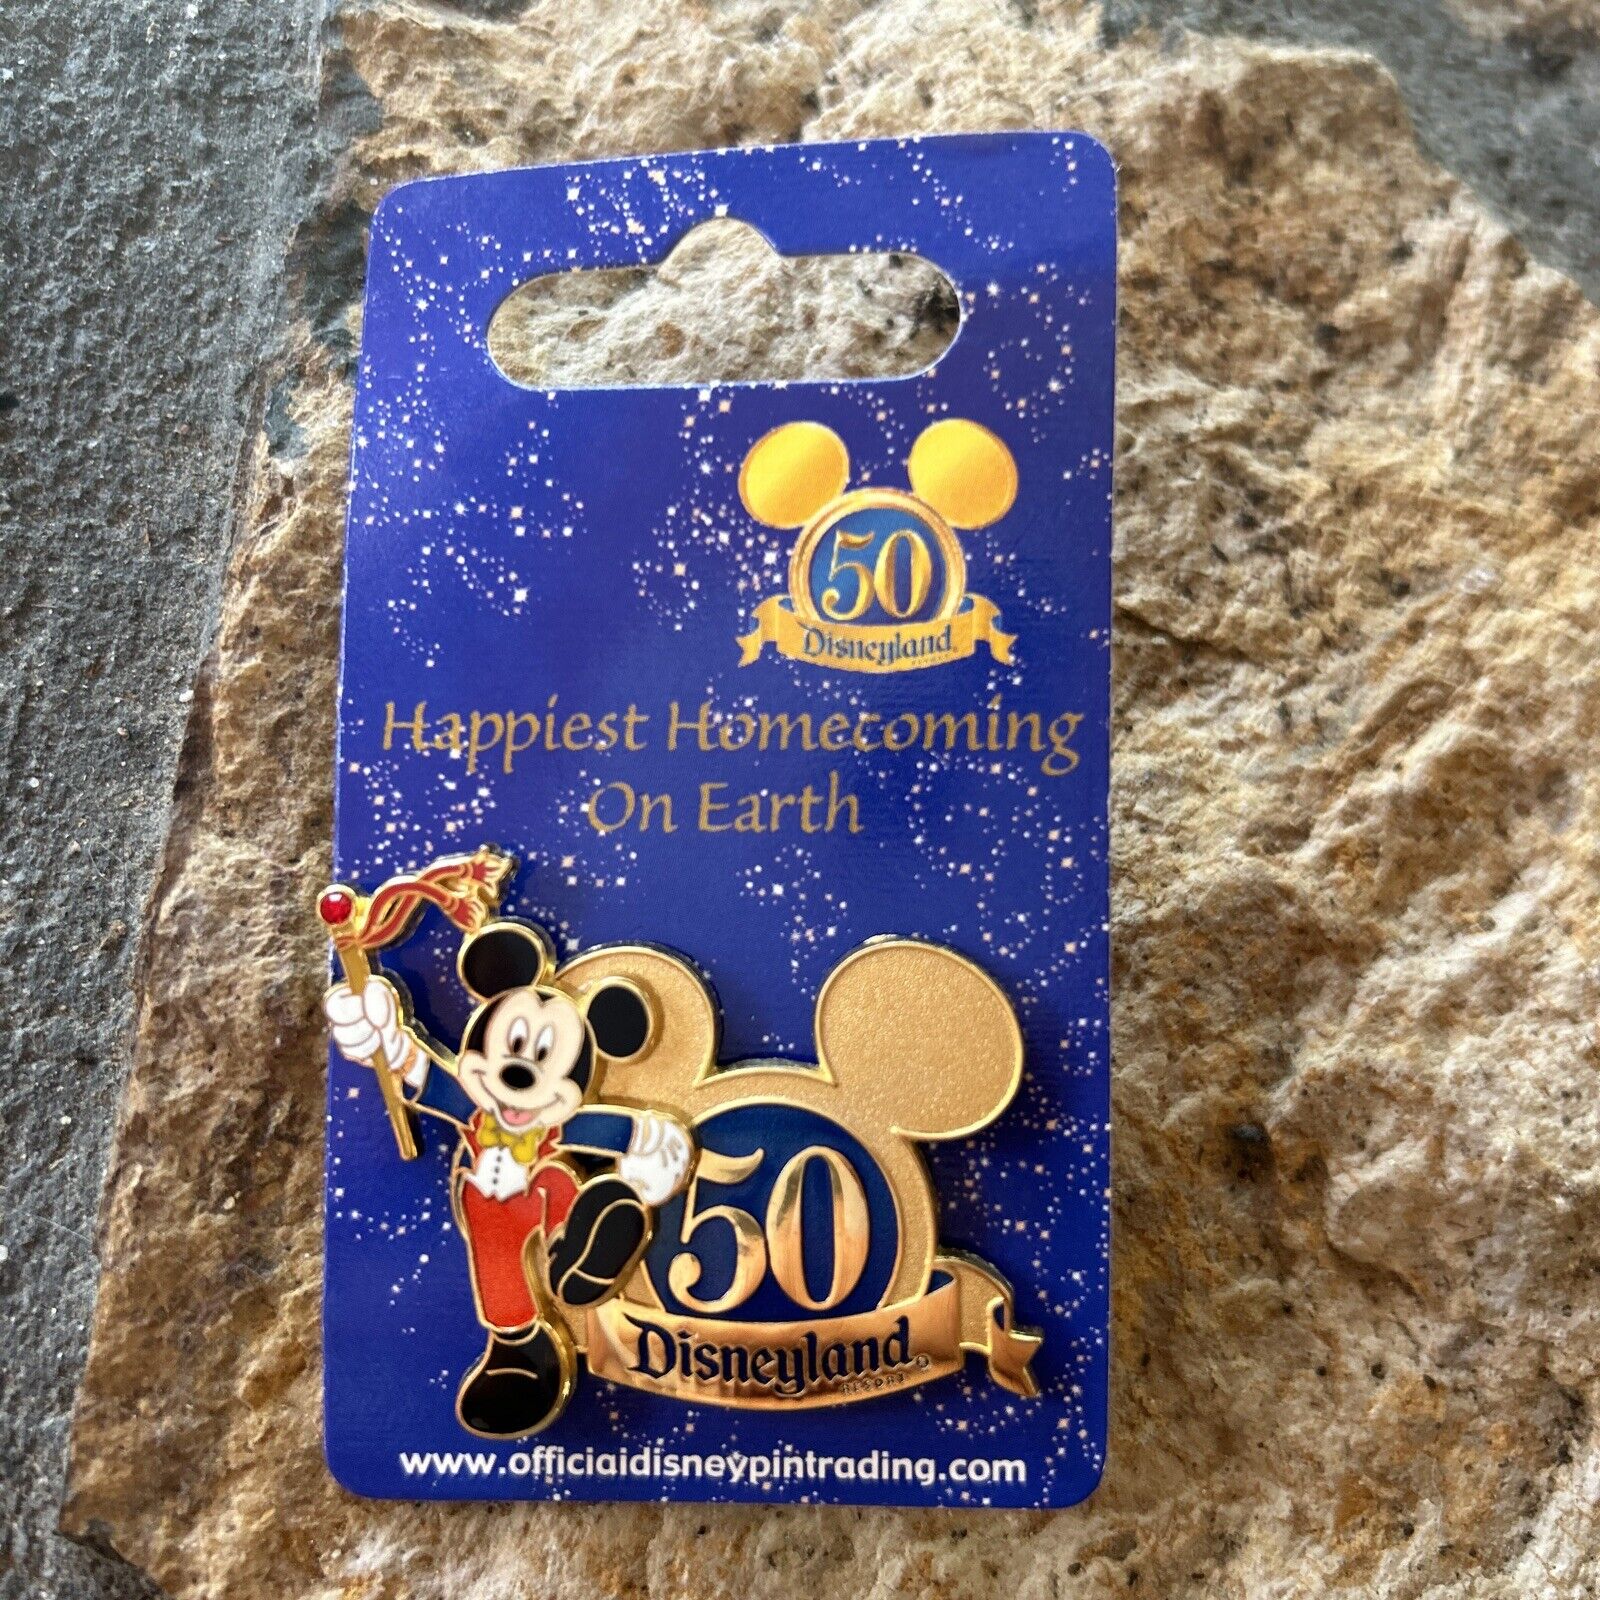 Disneyland 50th anniversary pin